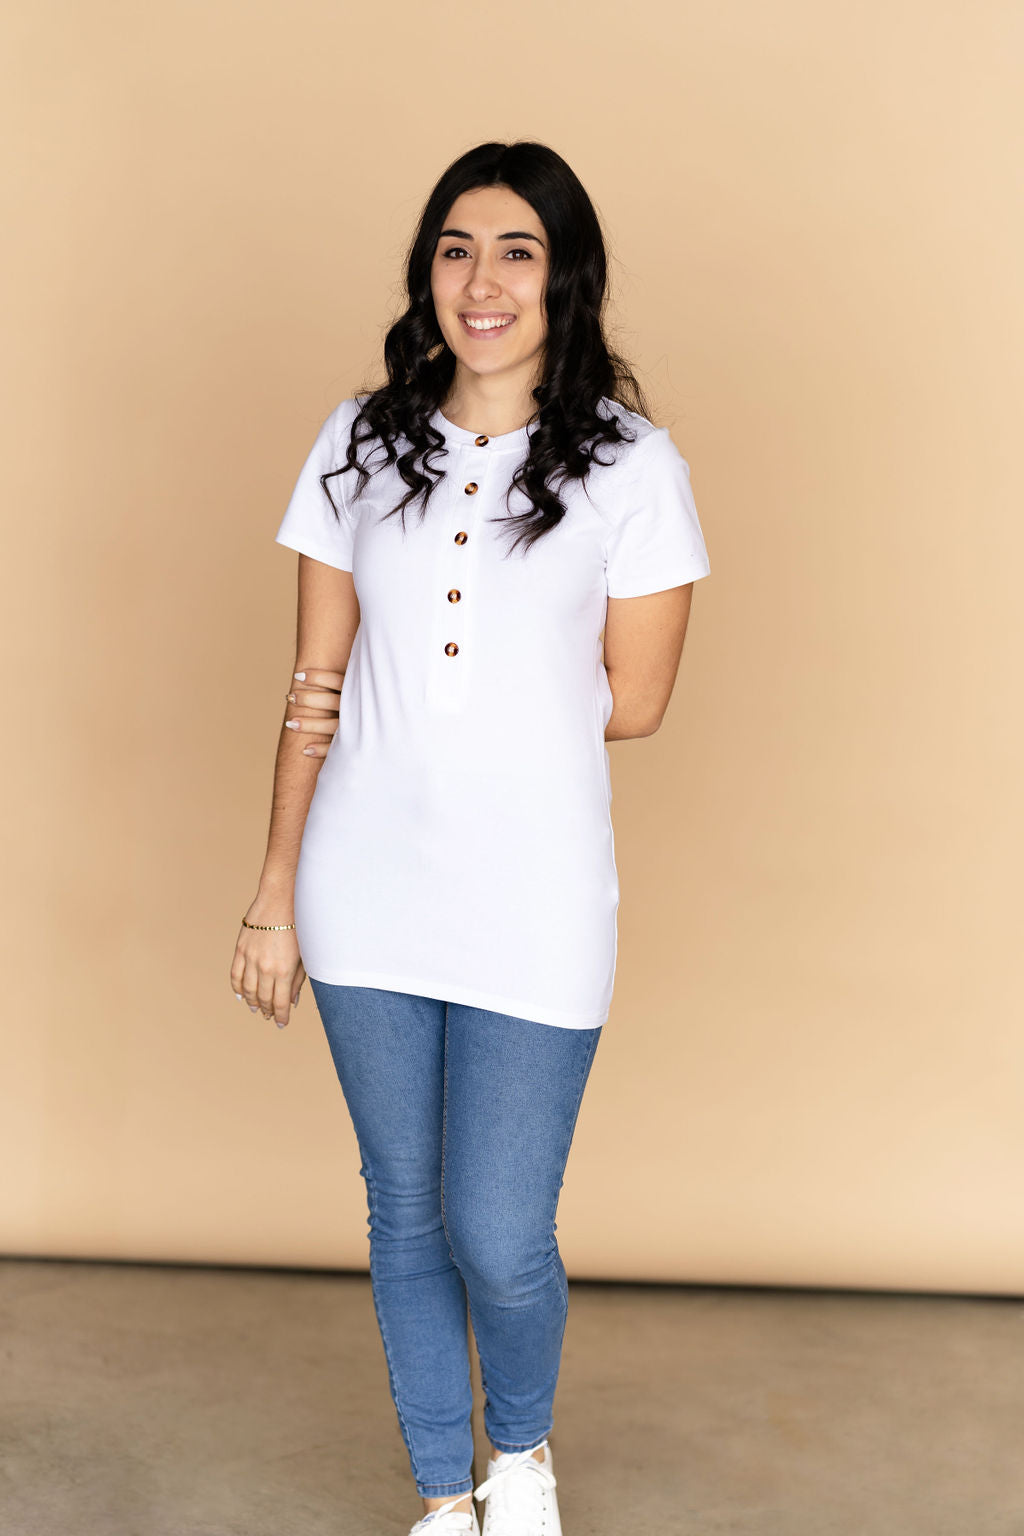 Anita Grey Nursing Shirt in Organic Cotton l Stylish Pregnancy Shirts